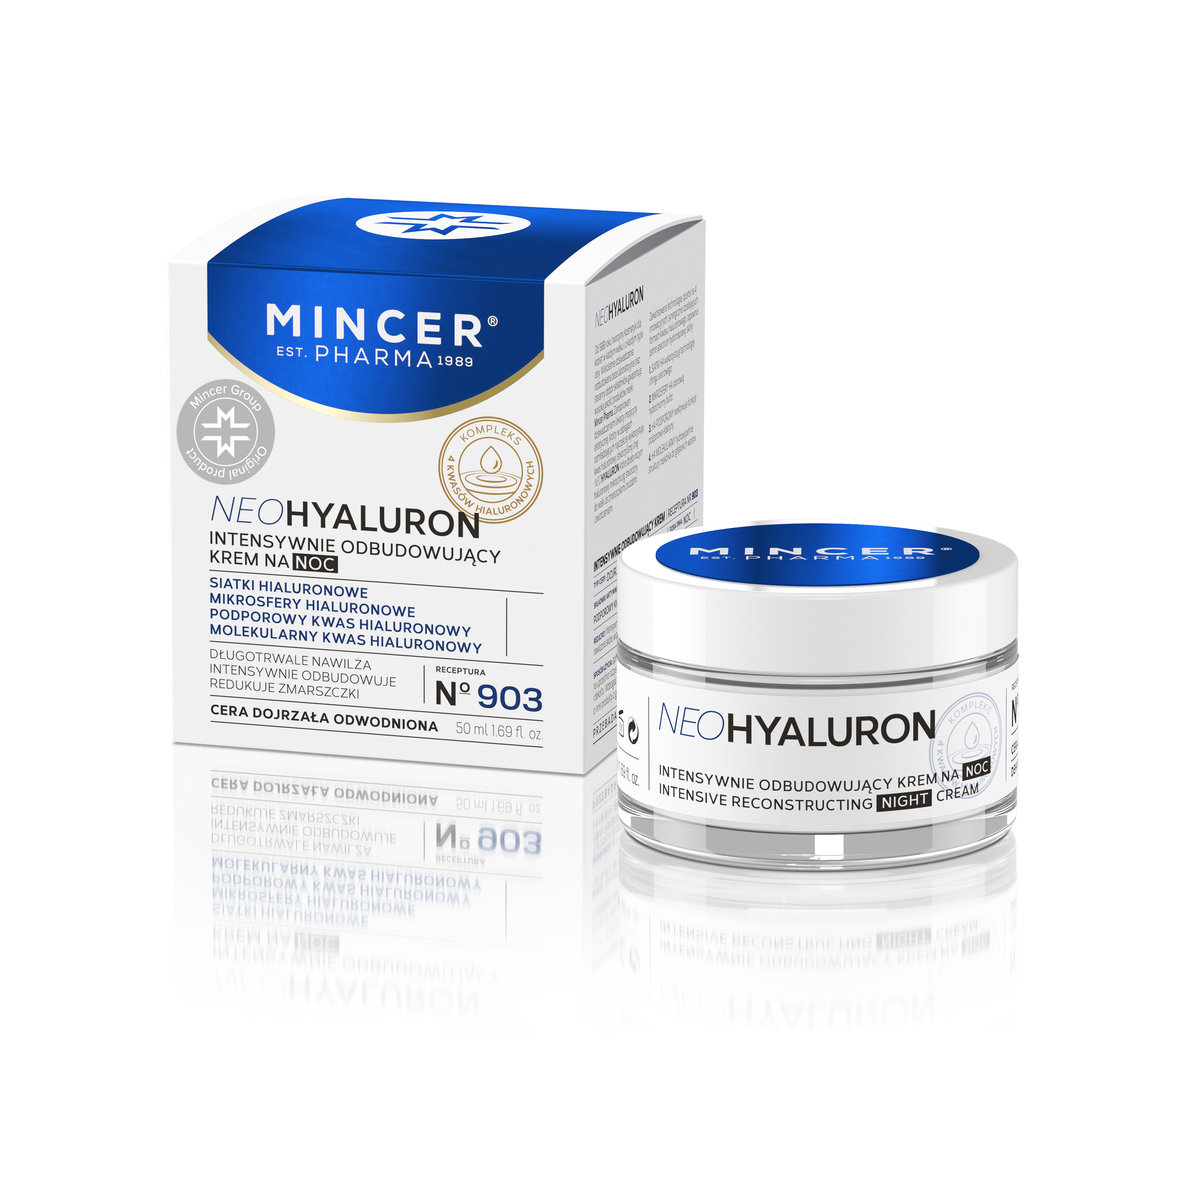 Mincer Pharma Pharma Neo Hyaluron Intensywnie odbudowujący krem na noc nr 903 50 ml